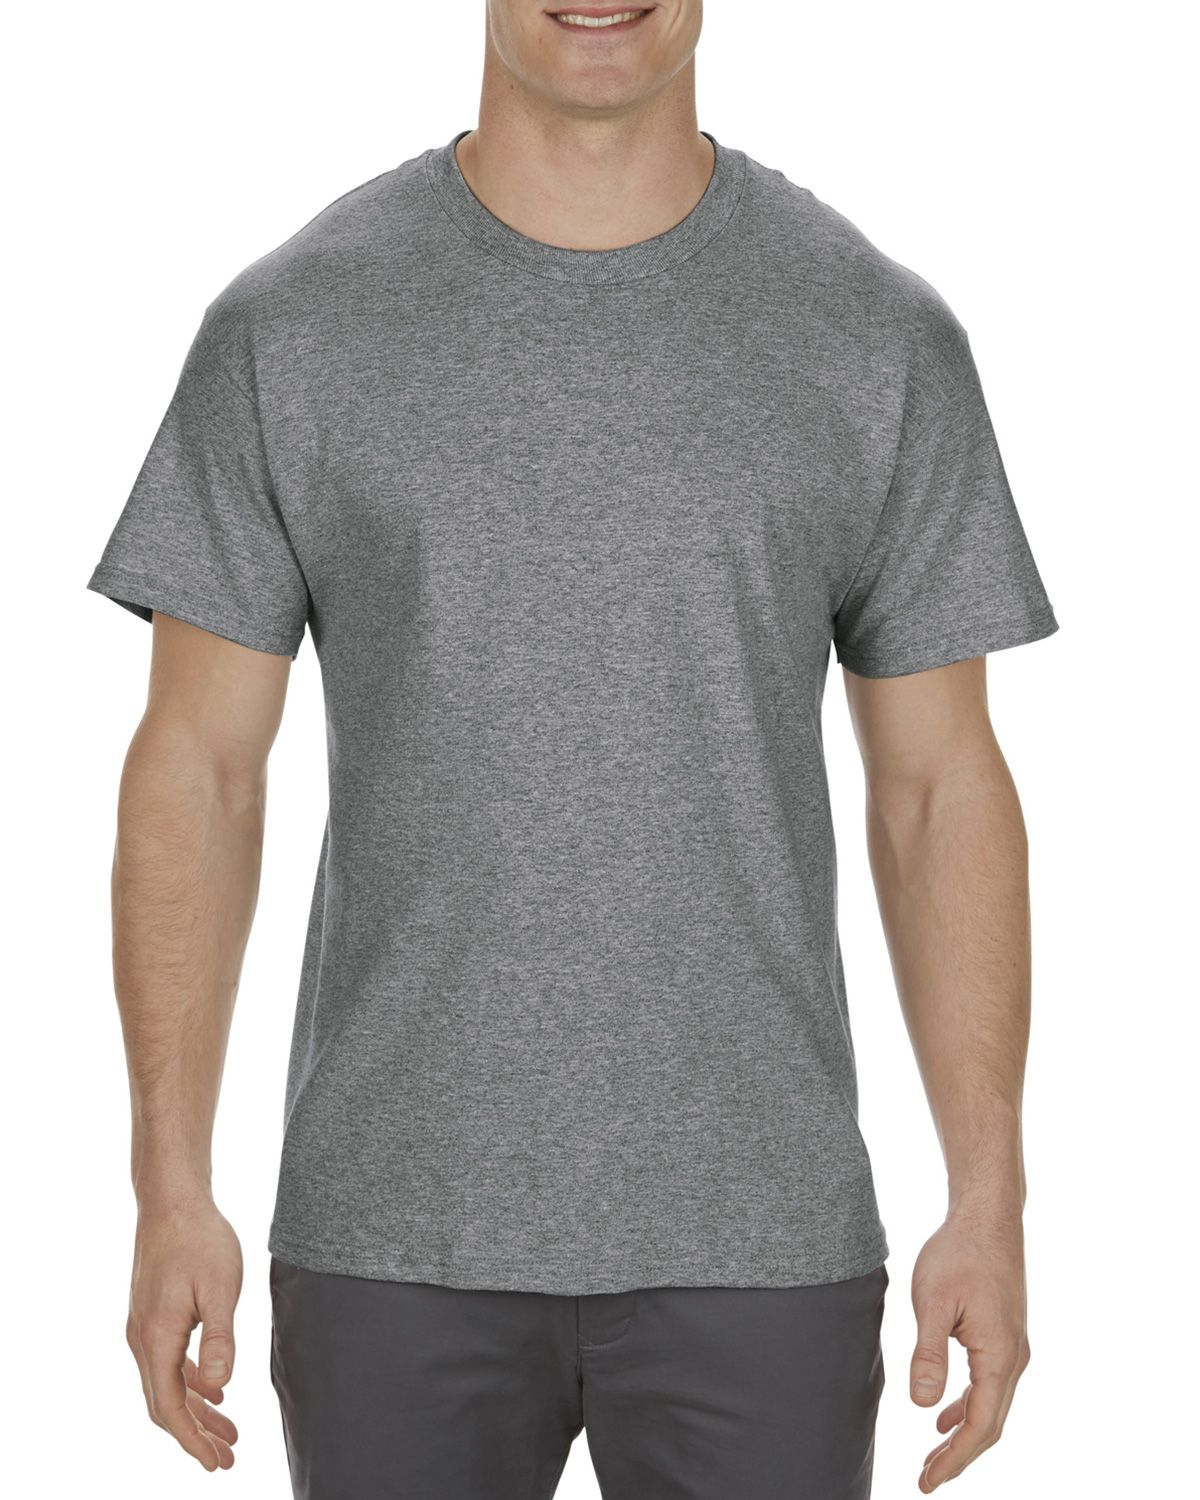 Alstyle AL1901 Men's 5.1 oz.; 100% Cotton T-Shirt